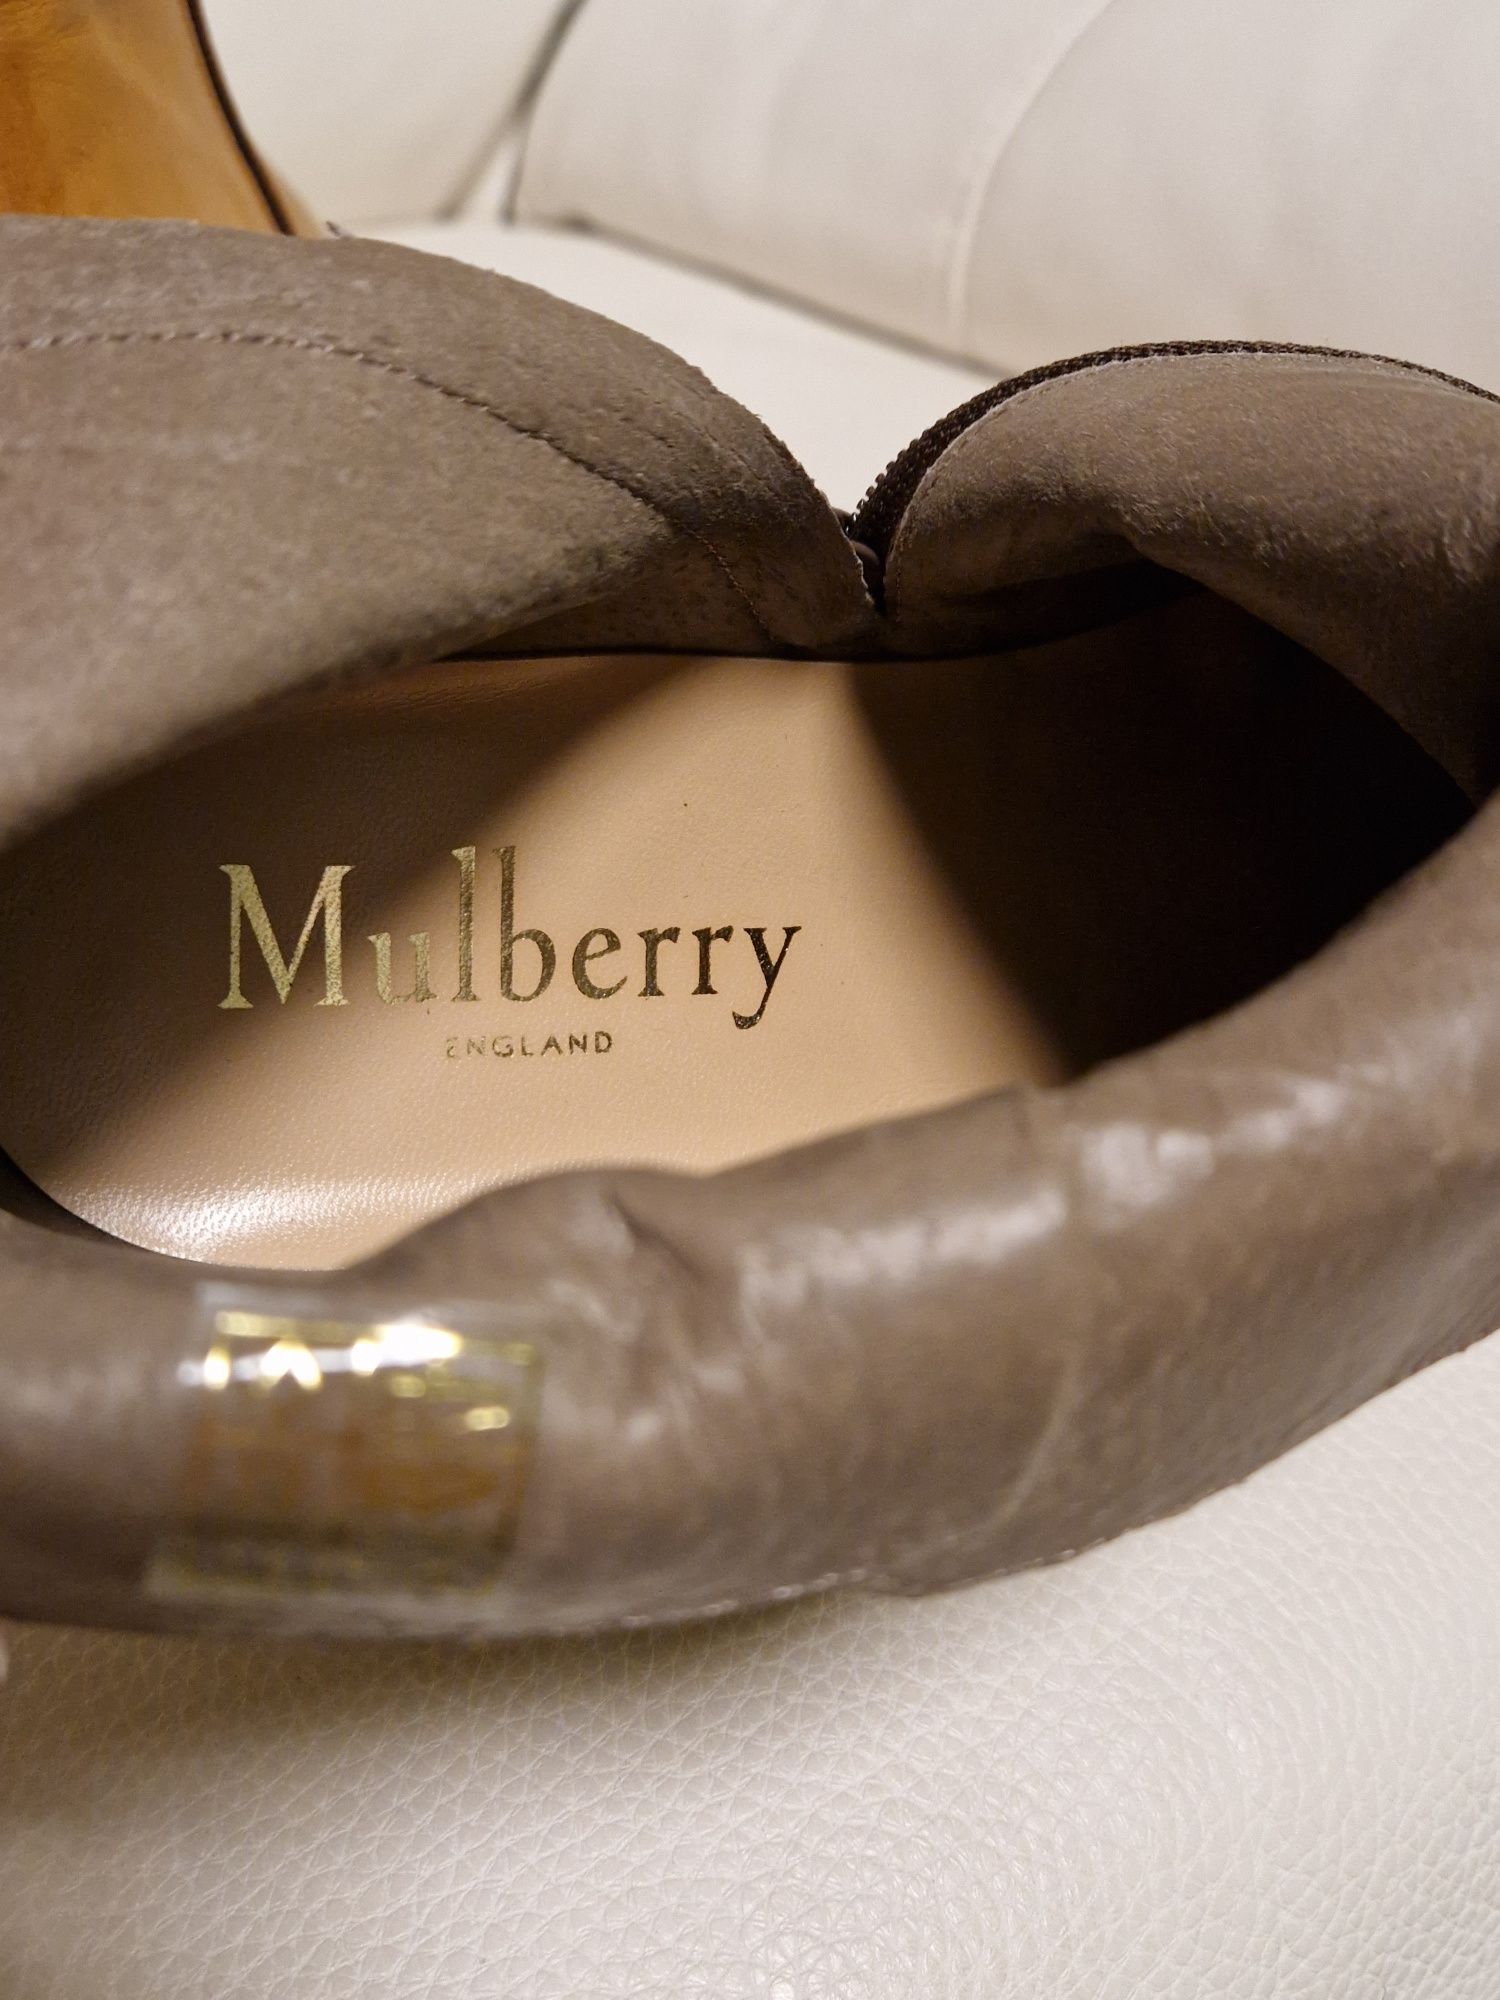 Ghete Mulberry 39, piele fină, brand, lux, firmă